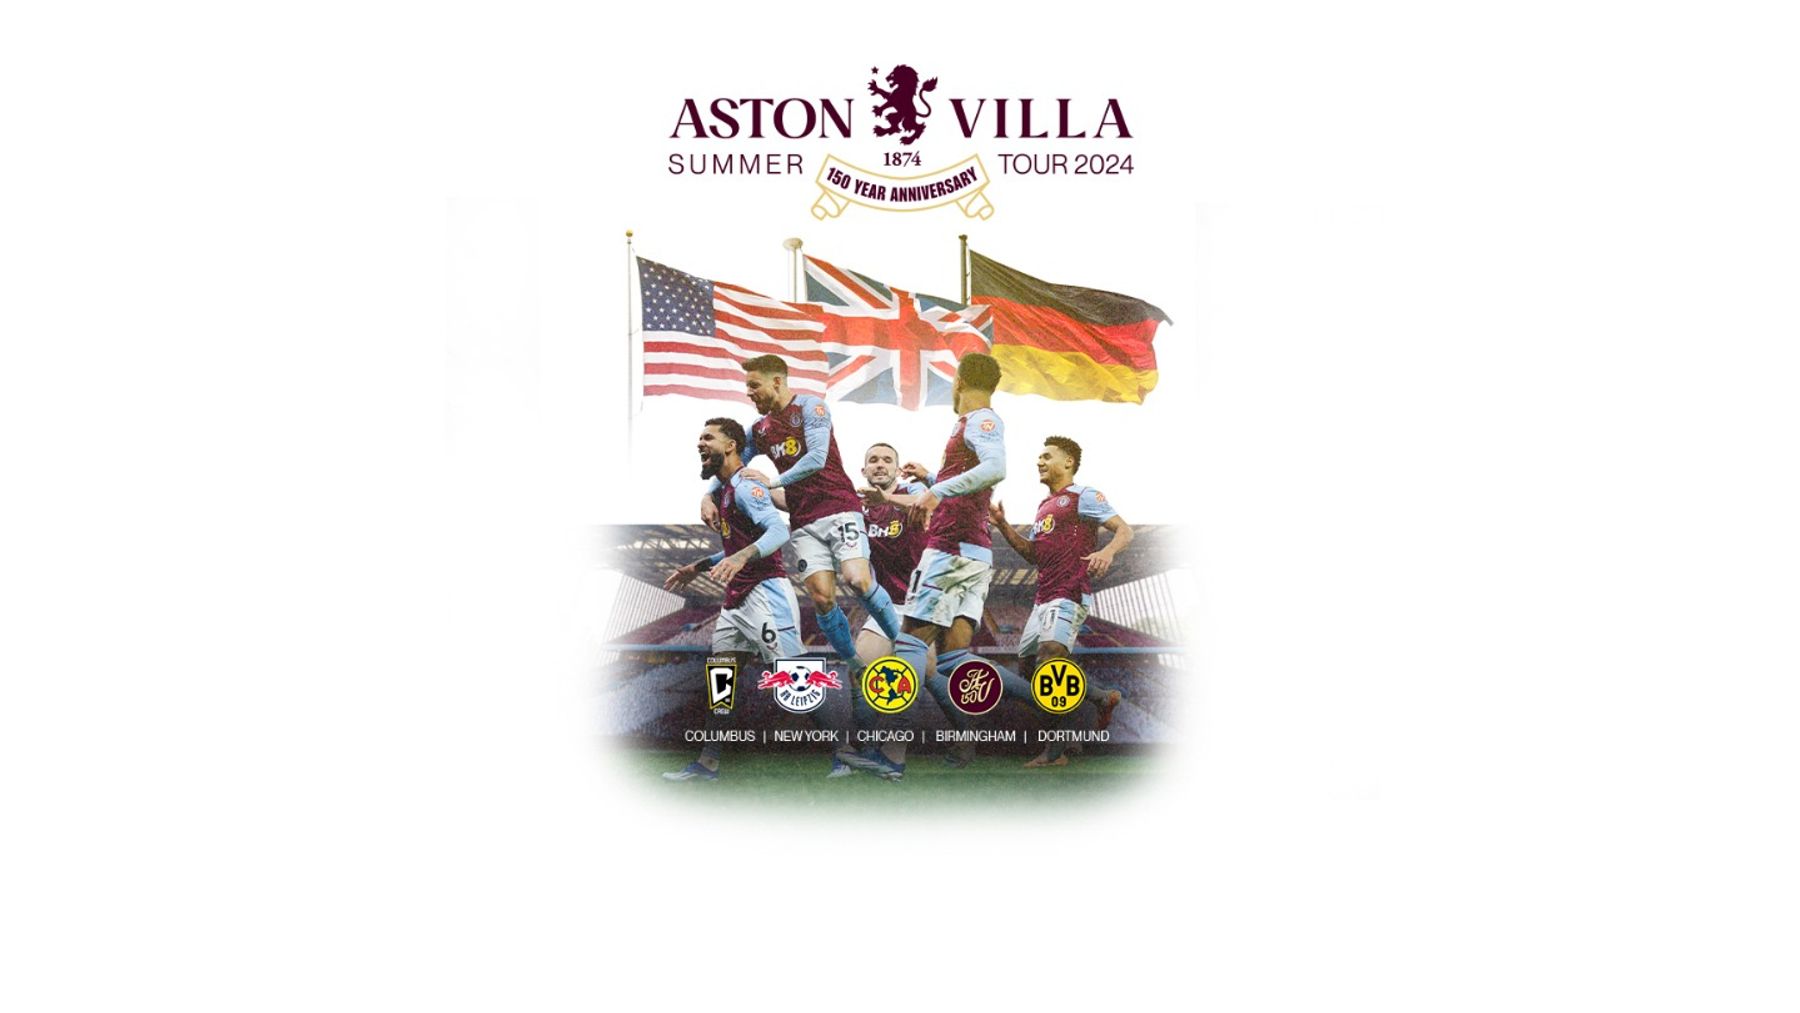 Aston Villa summer tour 2004